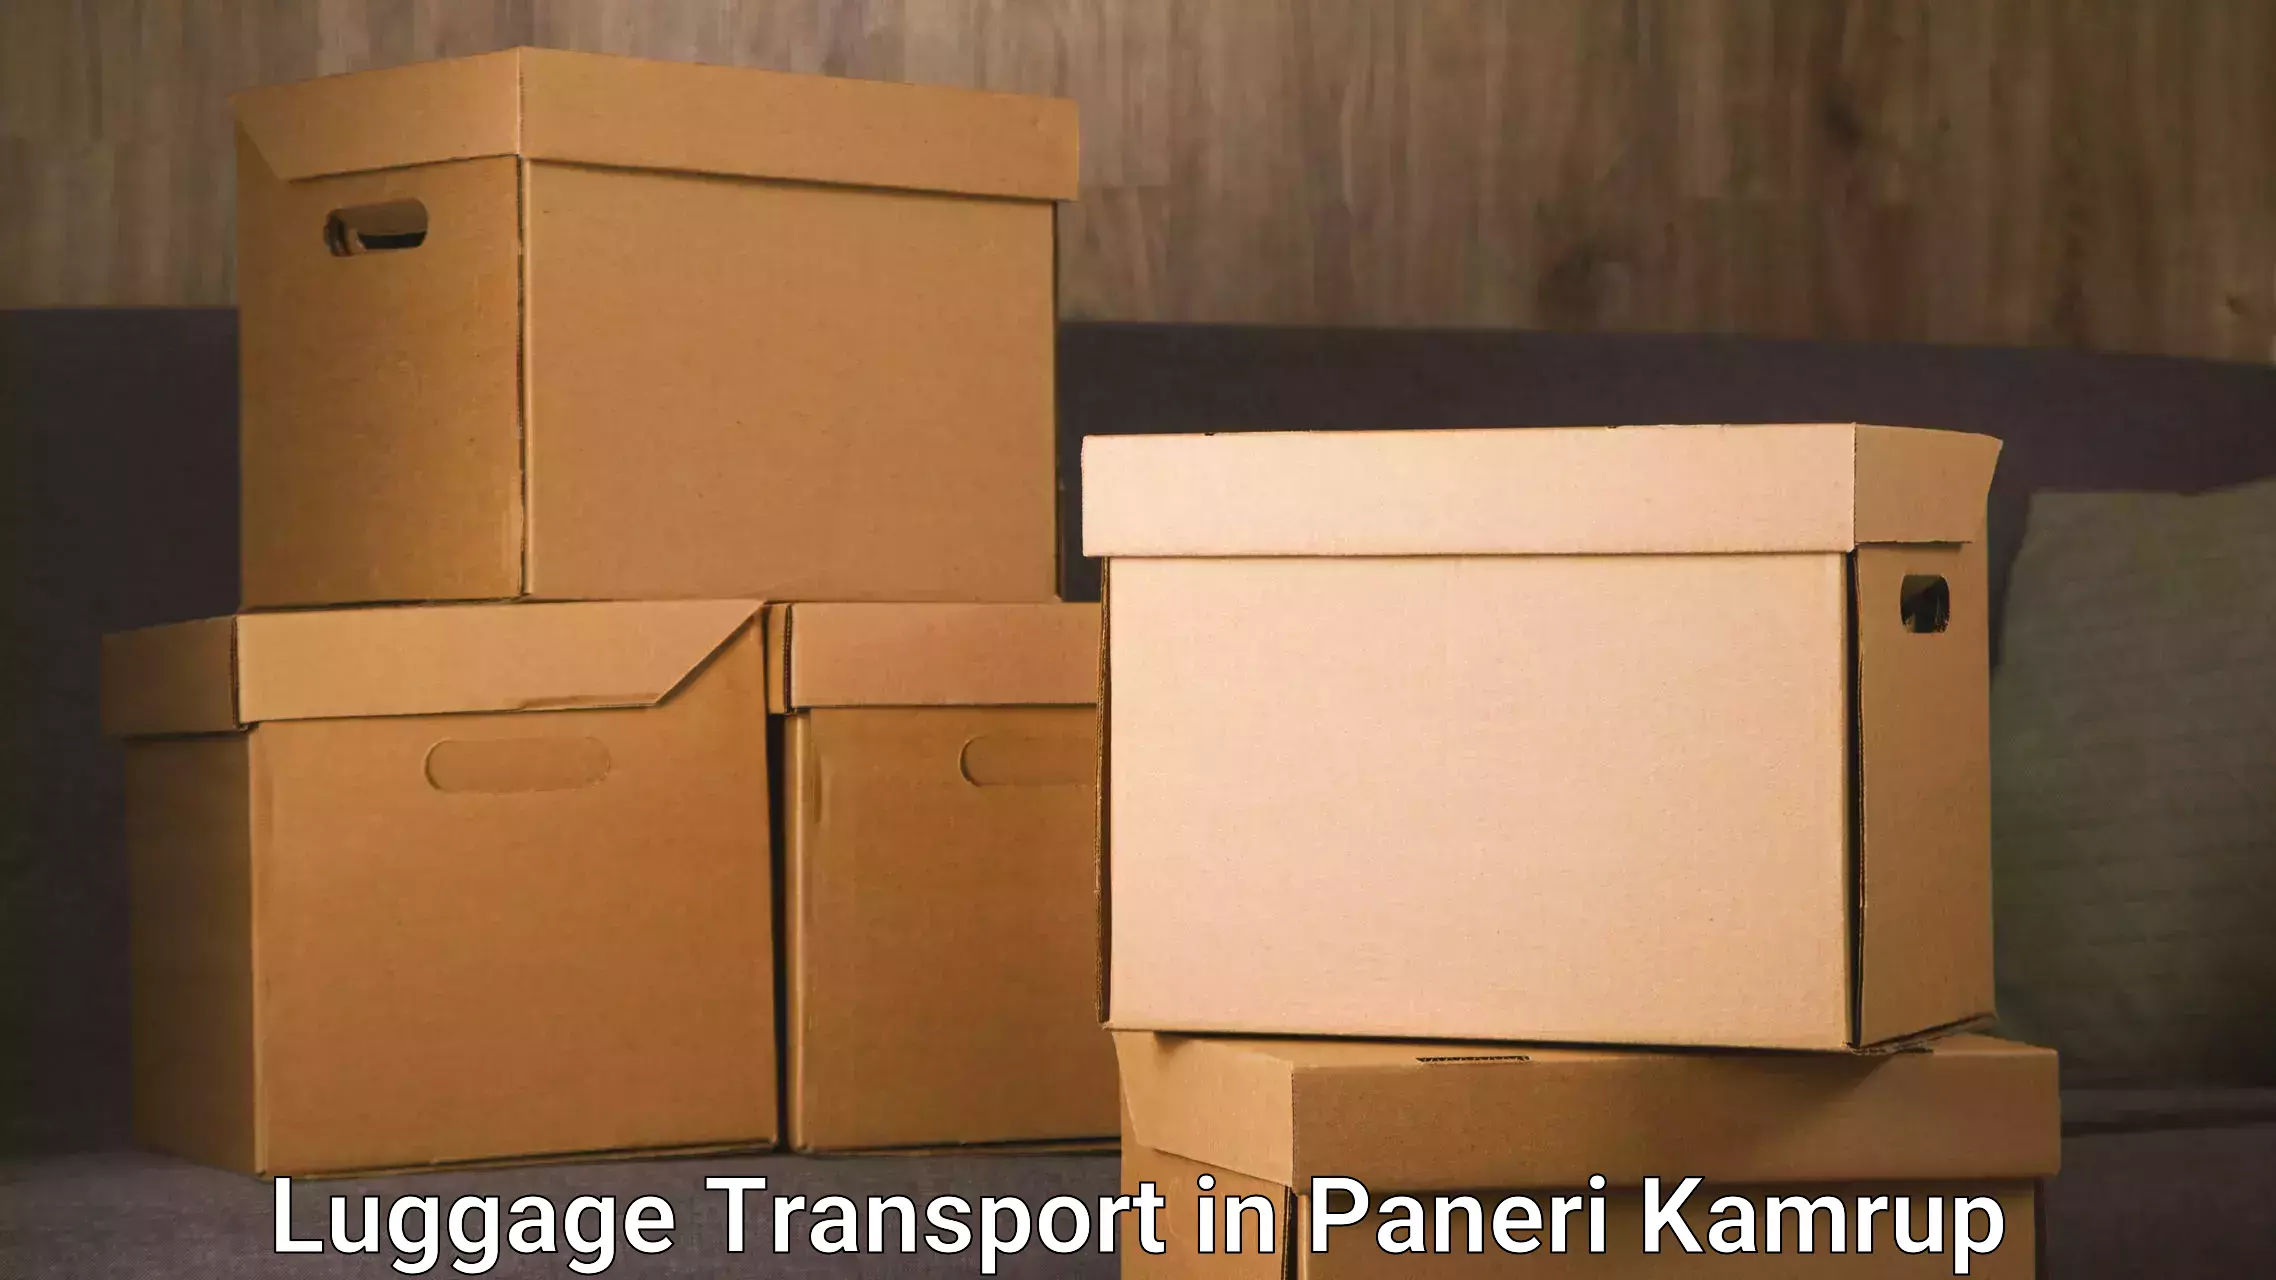 Baggage transport coordination in Paneri Kamrup